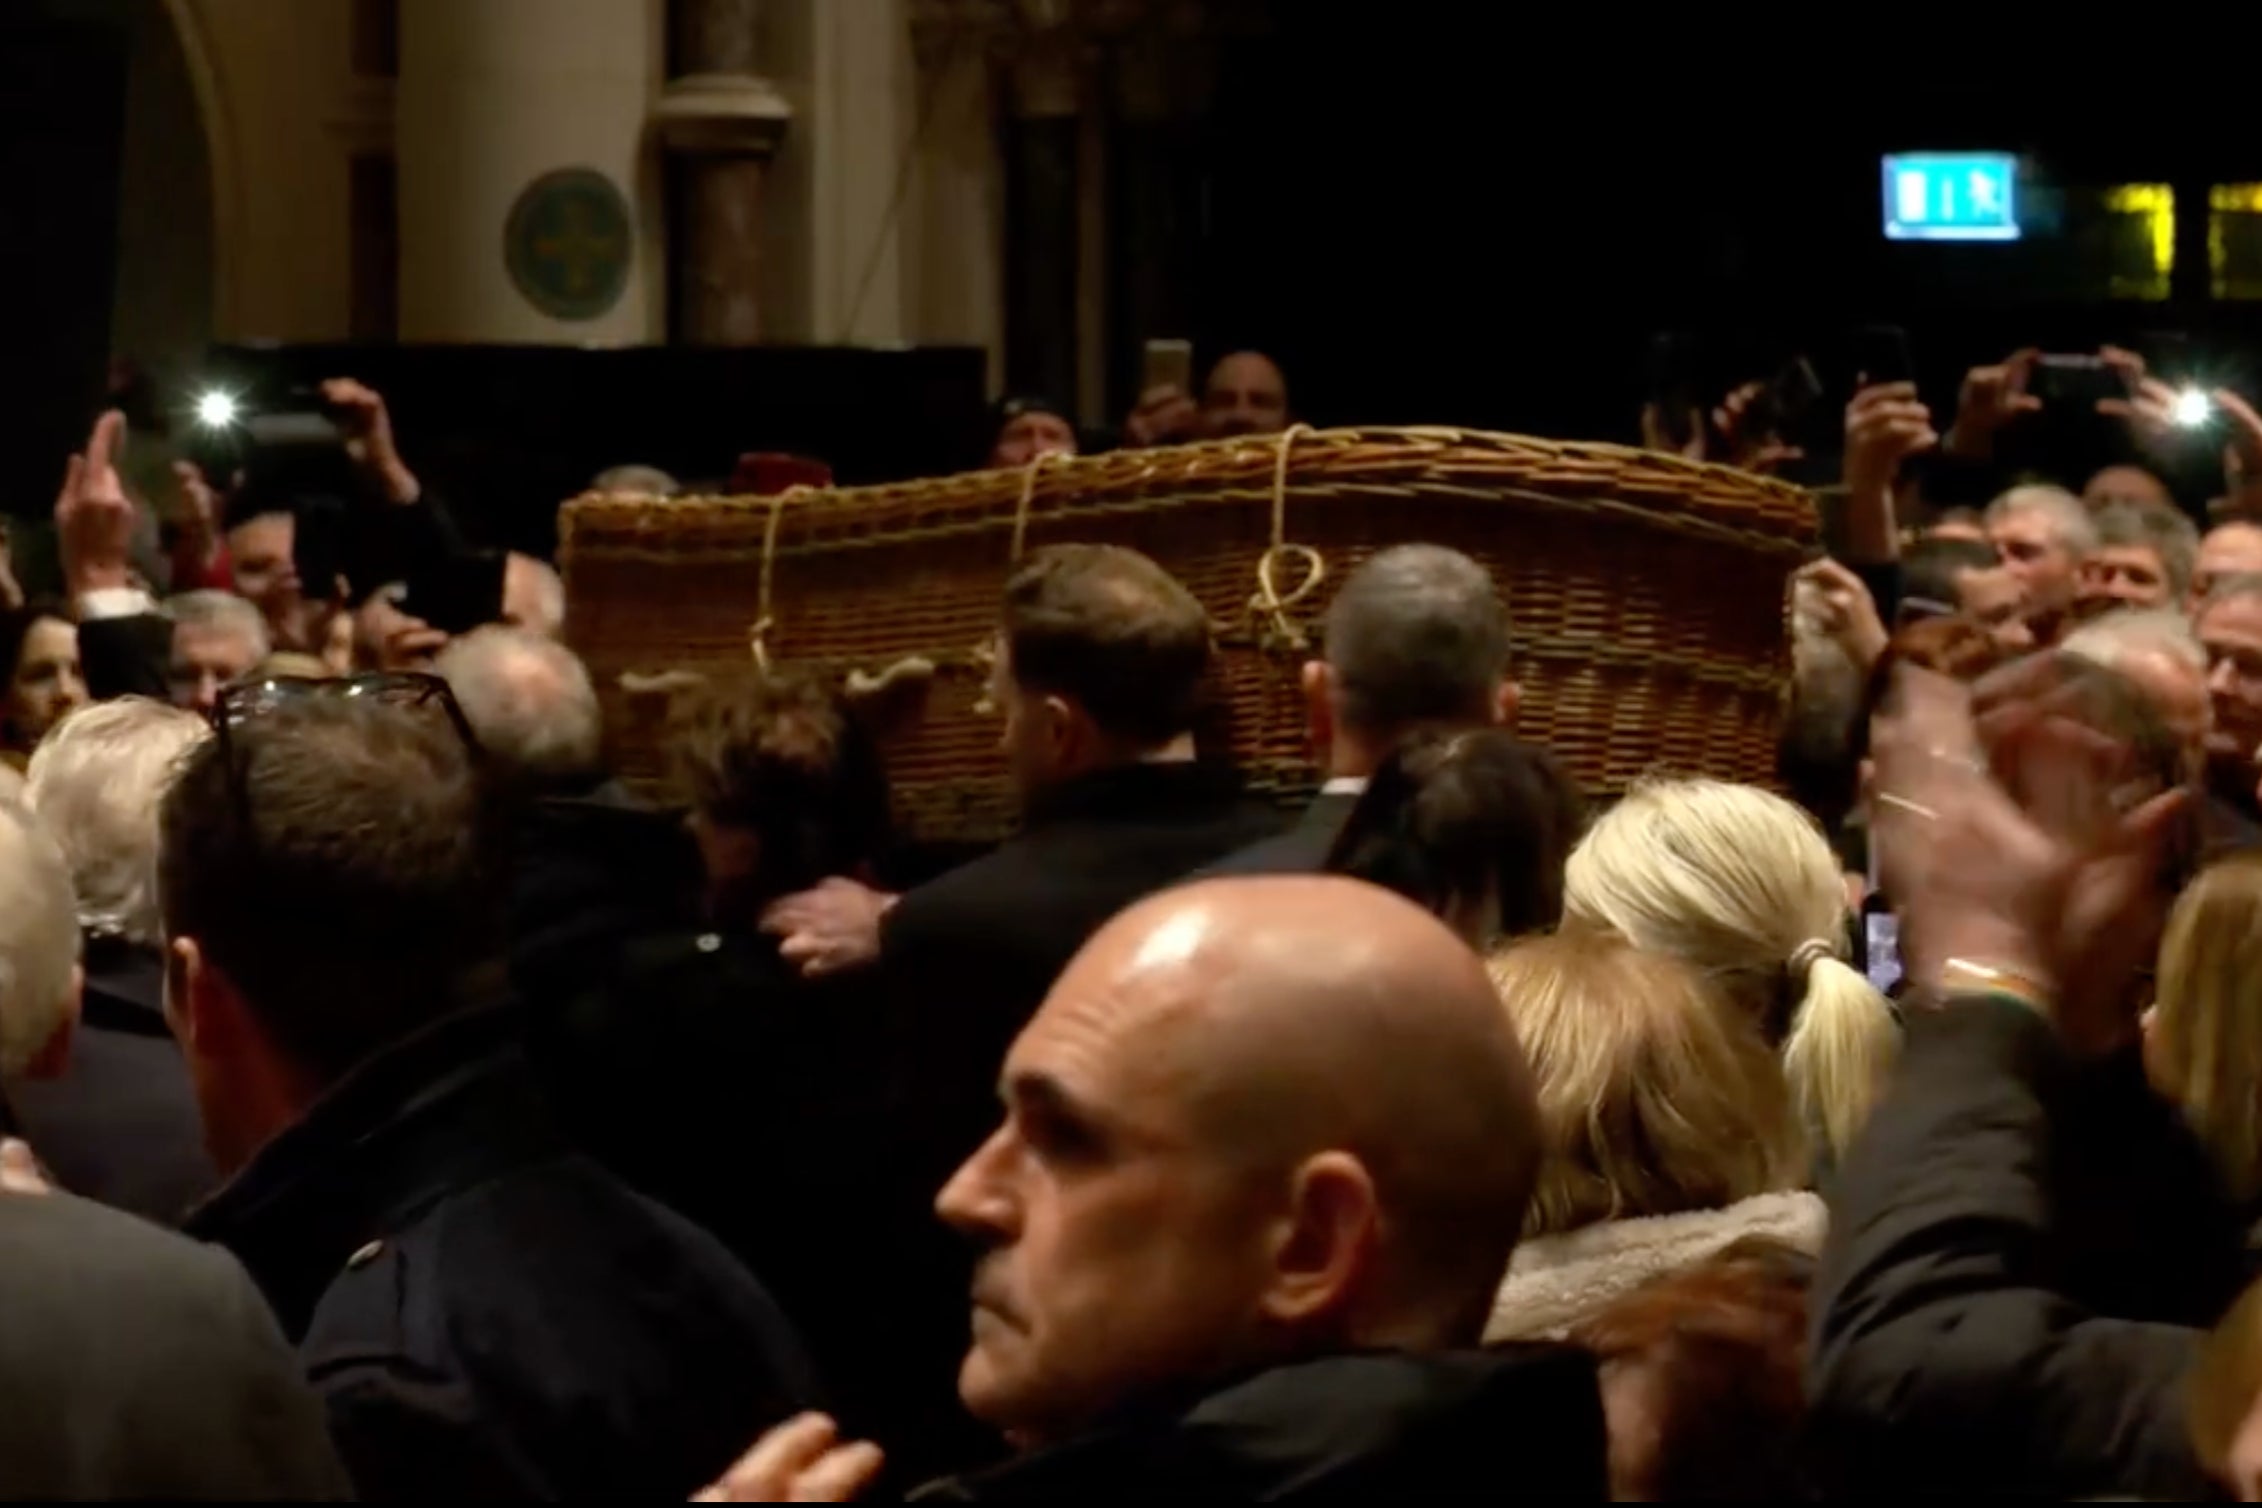 Shane MacGowan’s wicker casket leaves the church